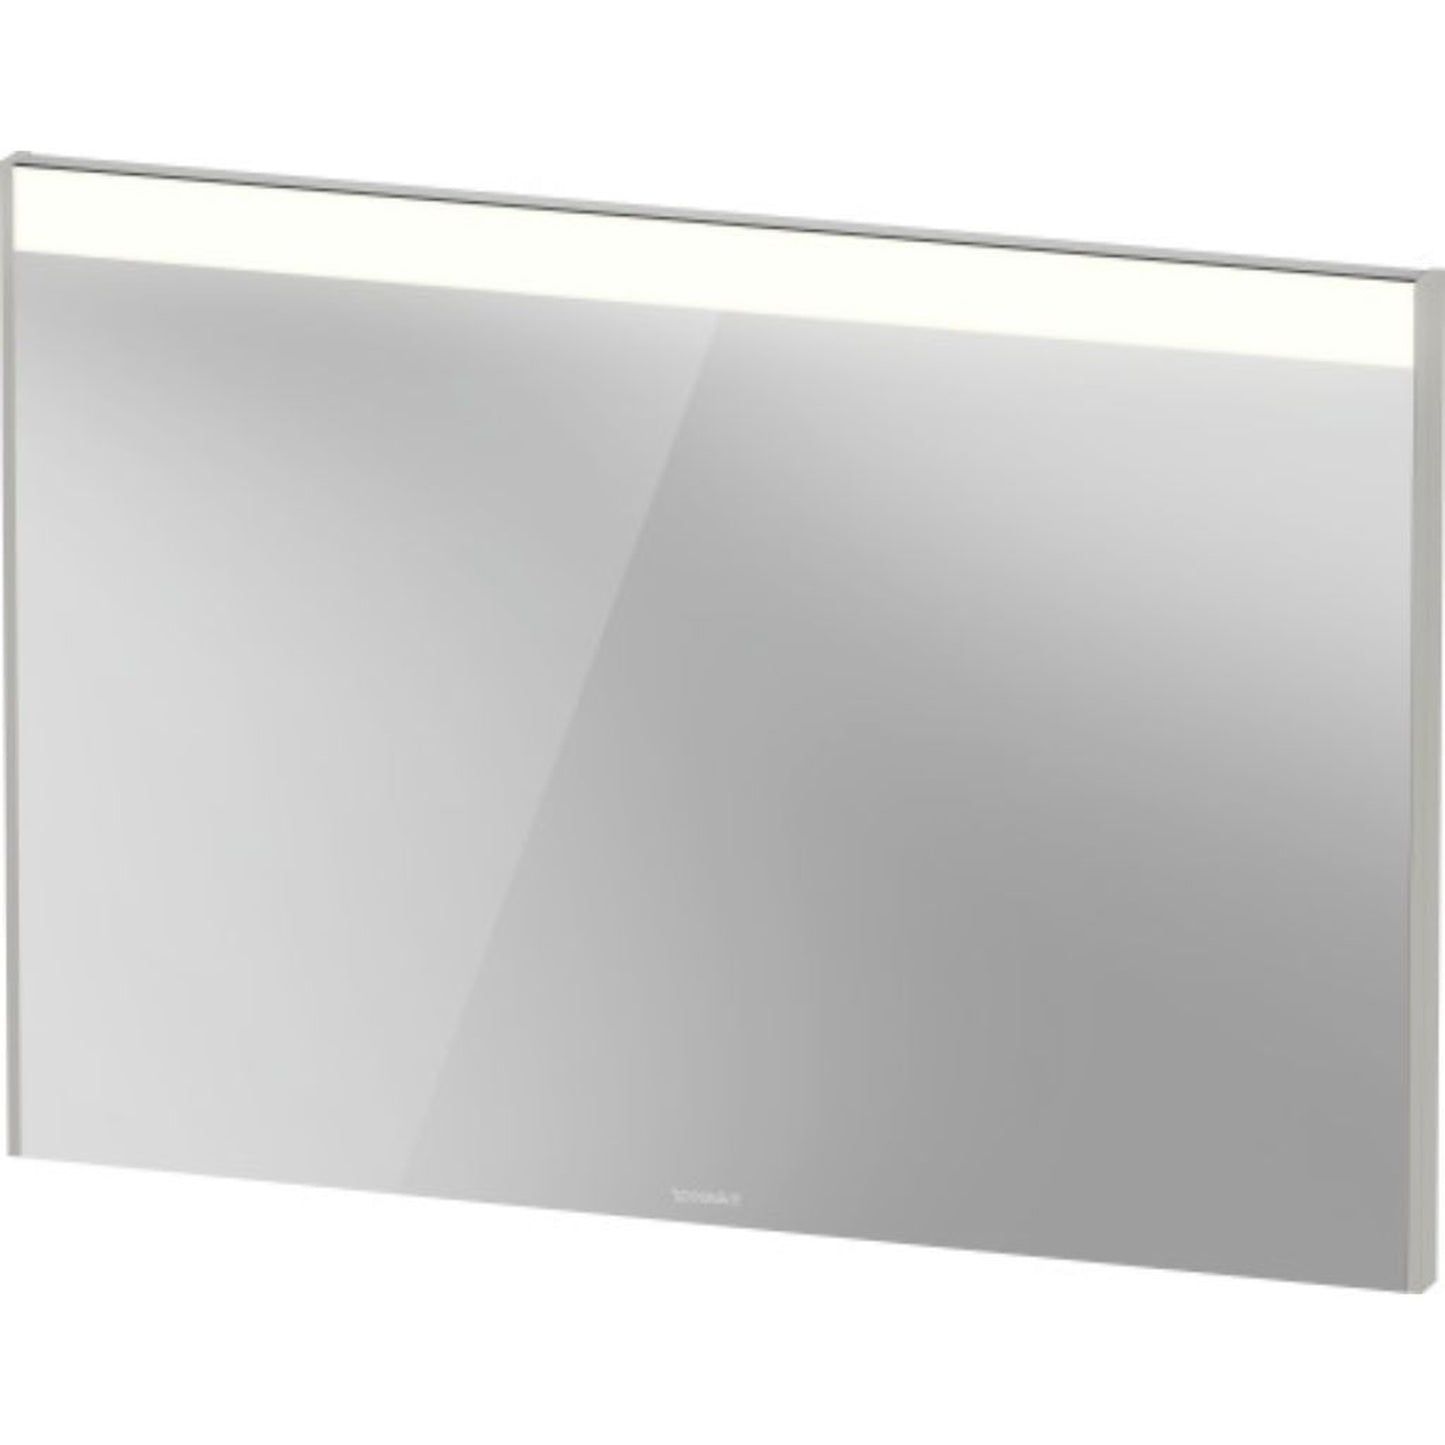 Duravit Brioso 40" x 28" x 1" Mirror With Lighting Concrete Grey Matt